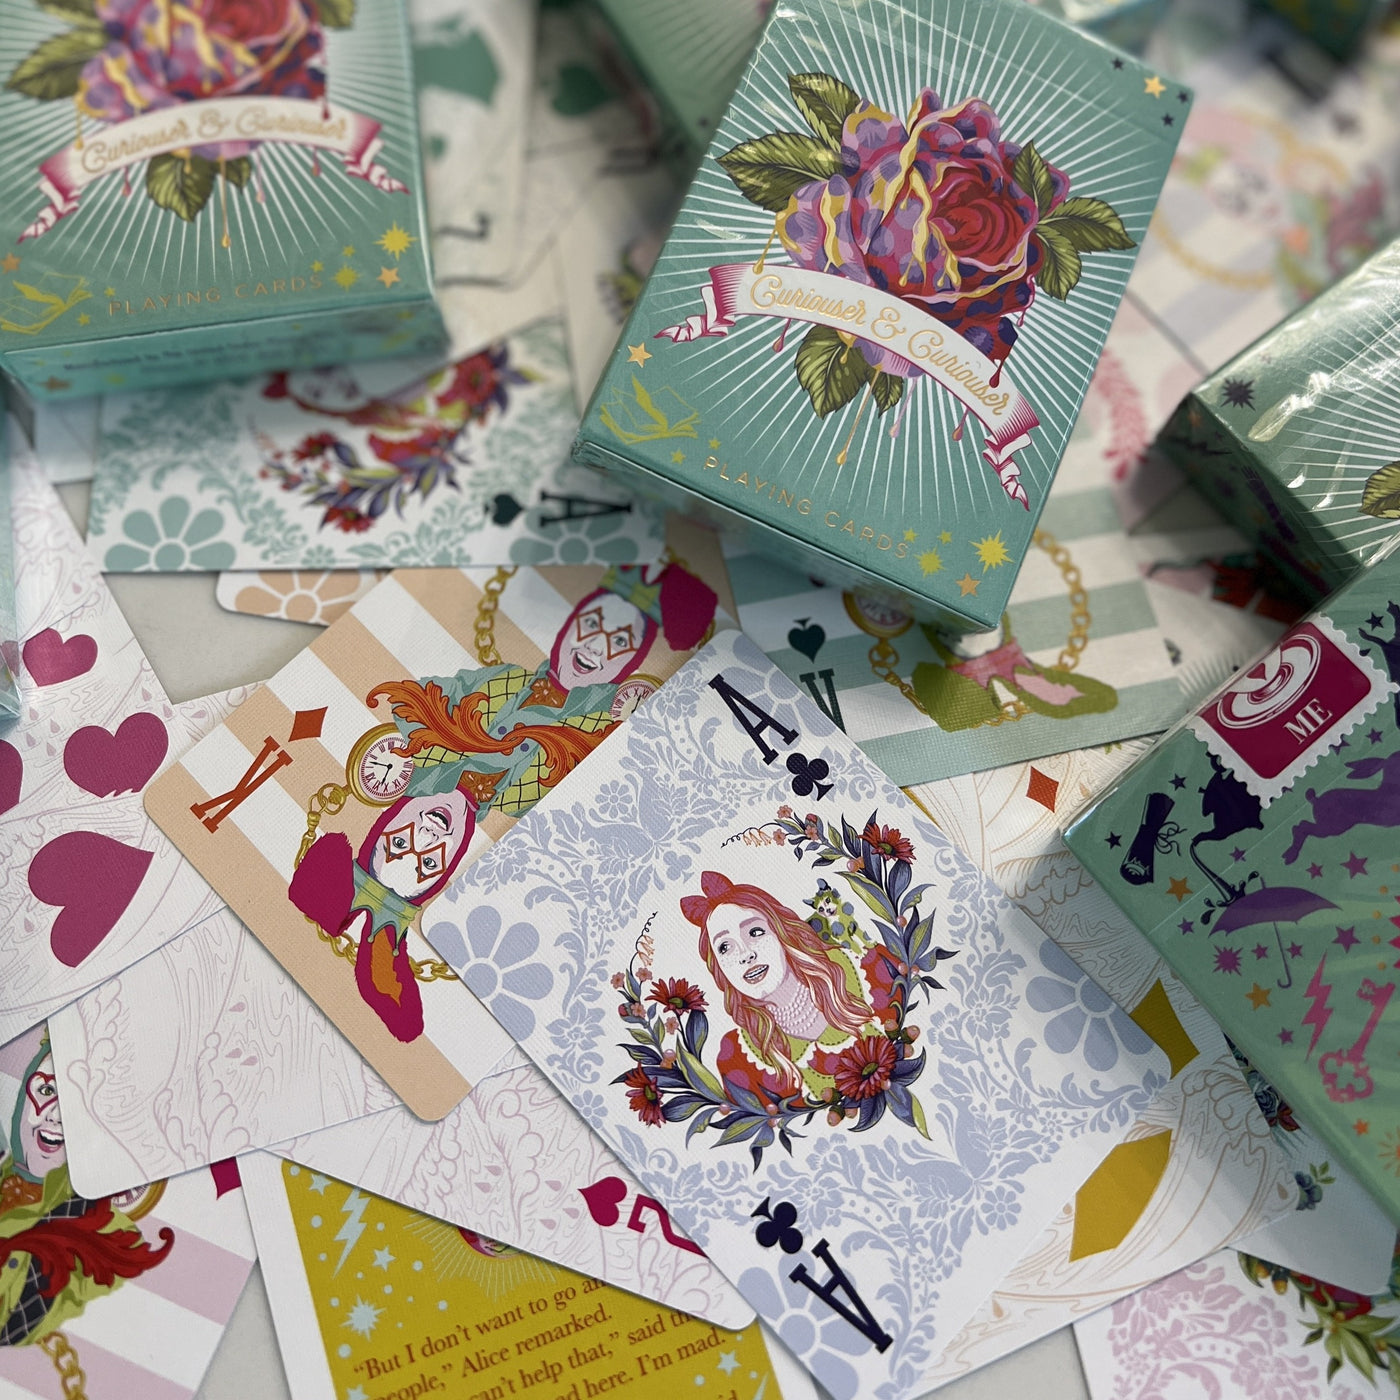 Tula Pink Curiouser Playing Cards! #VeryRare Collector Deck